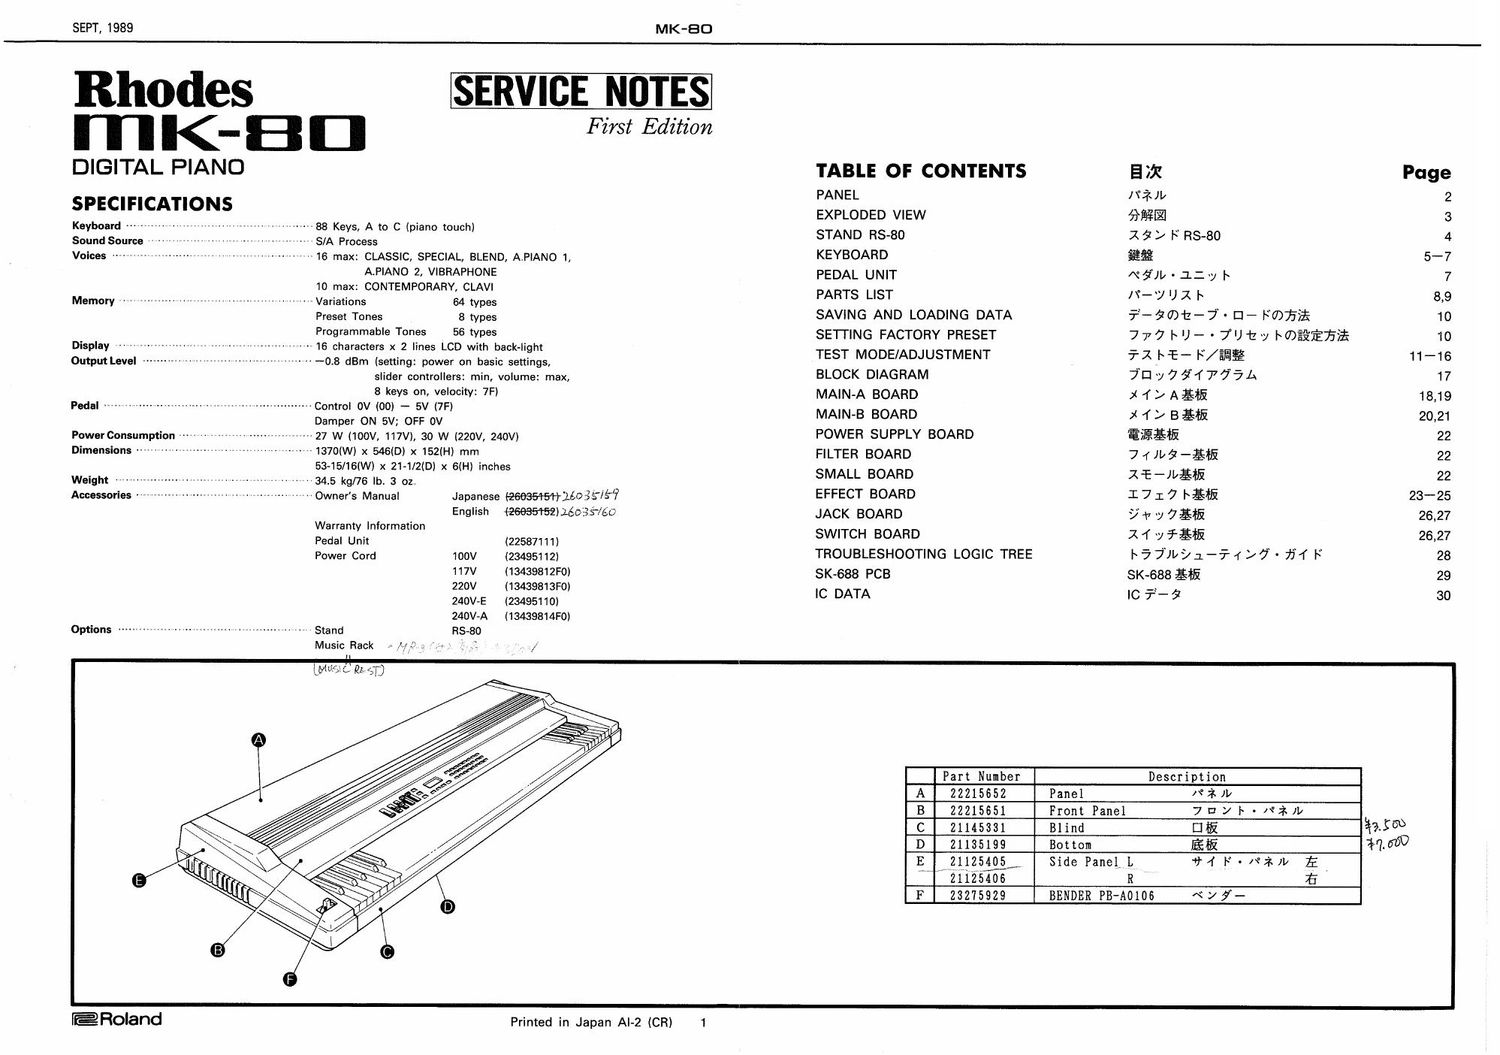 roland rhodes mk 80 service manual